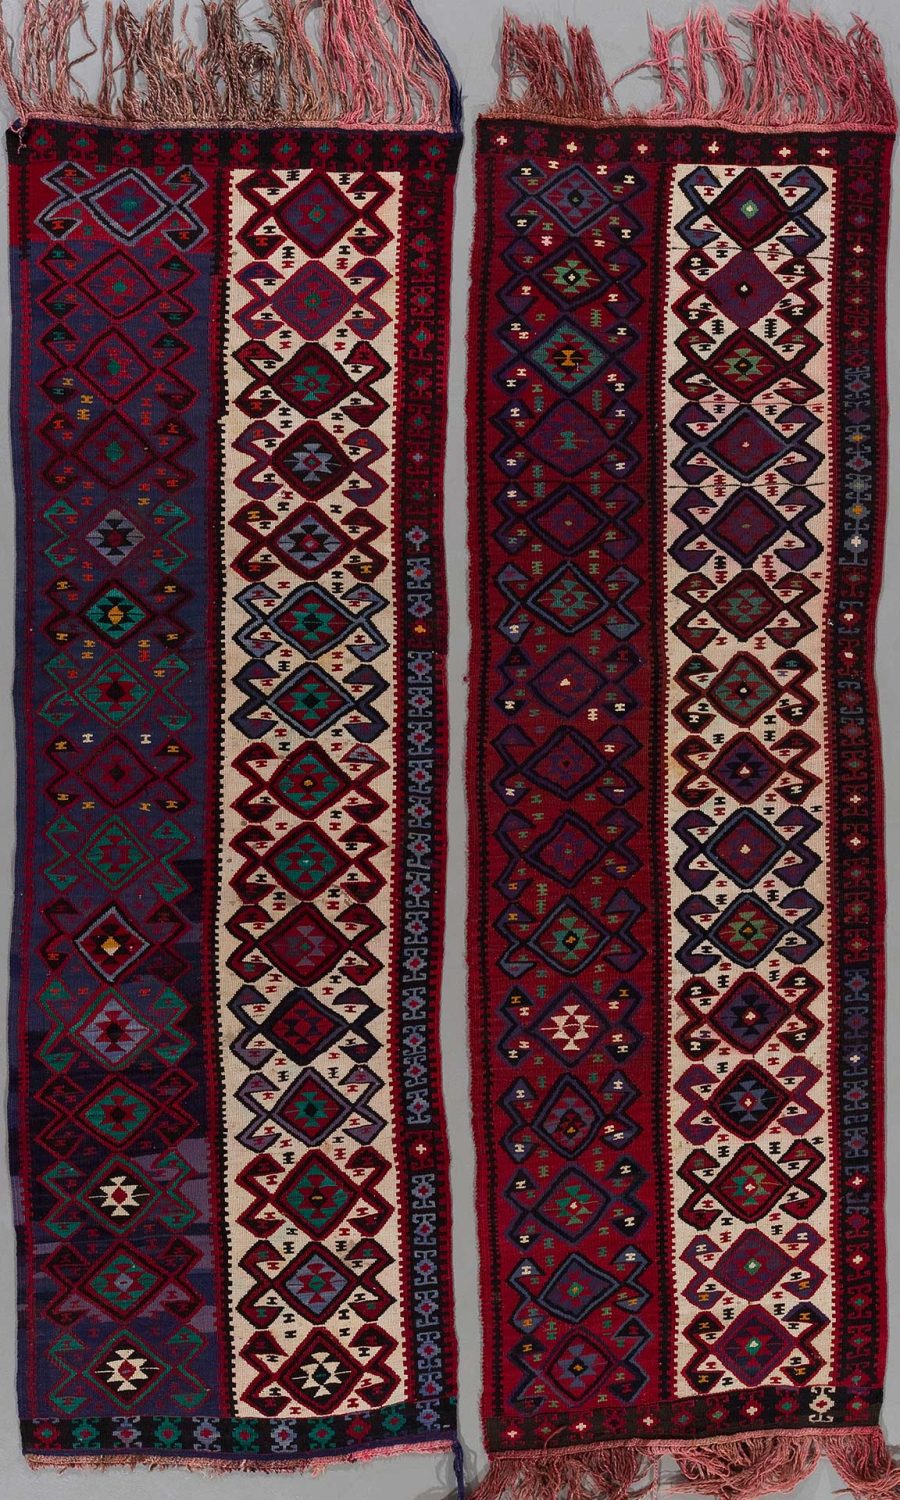 Zwei traditionelle Handgewebte Teppiche mit komplexen geometrischen Mustern in Rot-, Blau-, Schwarz- und Beigetönen, mit Fransen an den Enden.